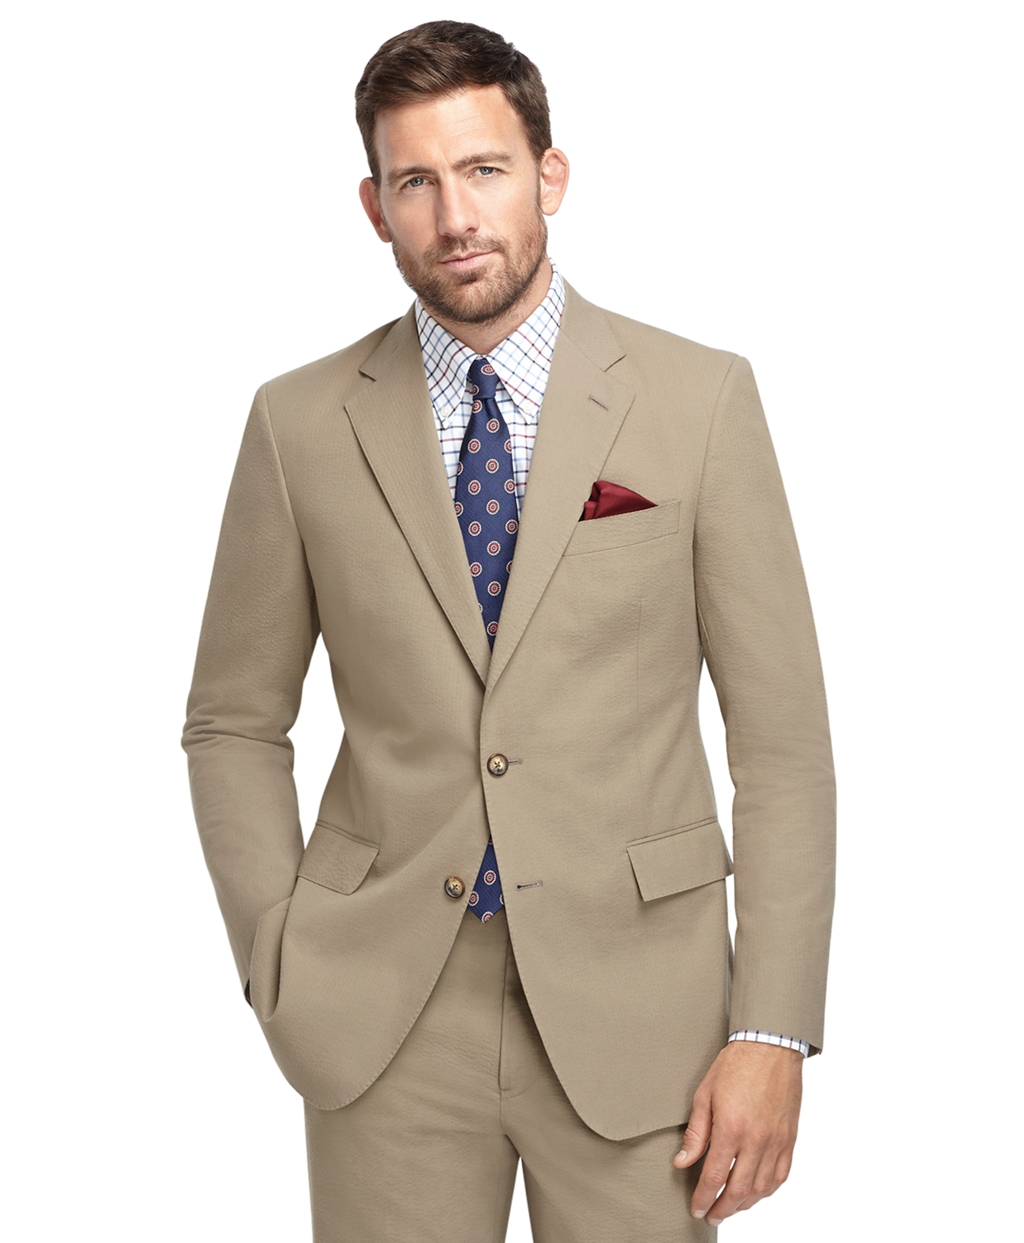 Mens Suits Sale Adelaide - Cheap Jack & Jones Men's Clothing Sale | Up ...